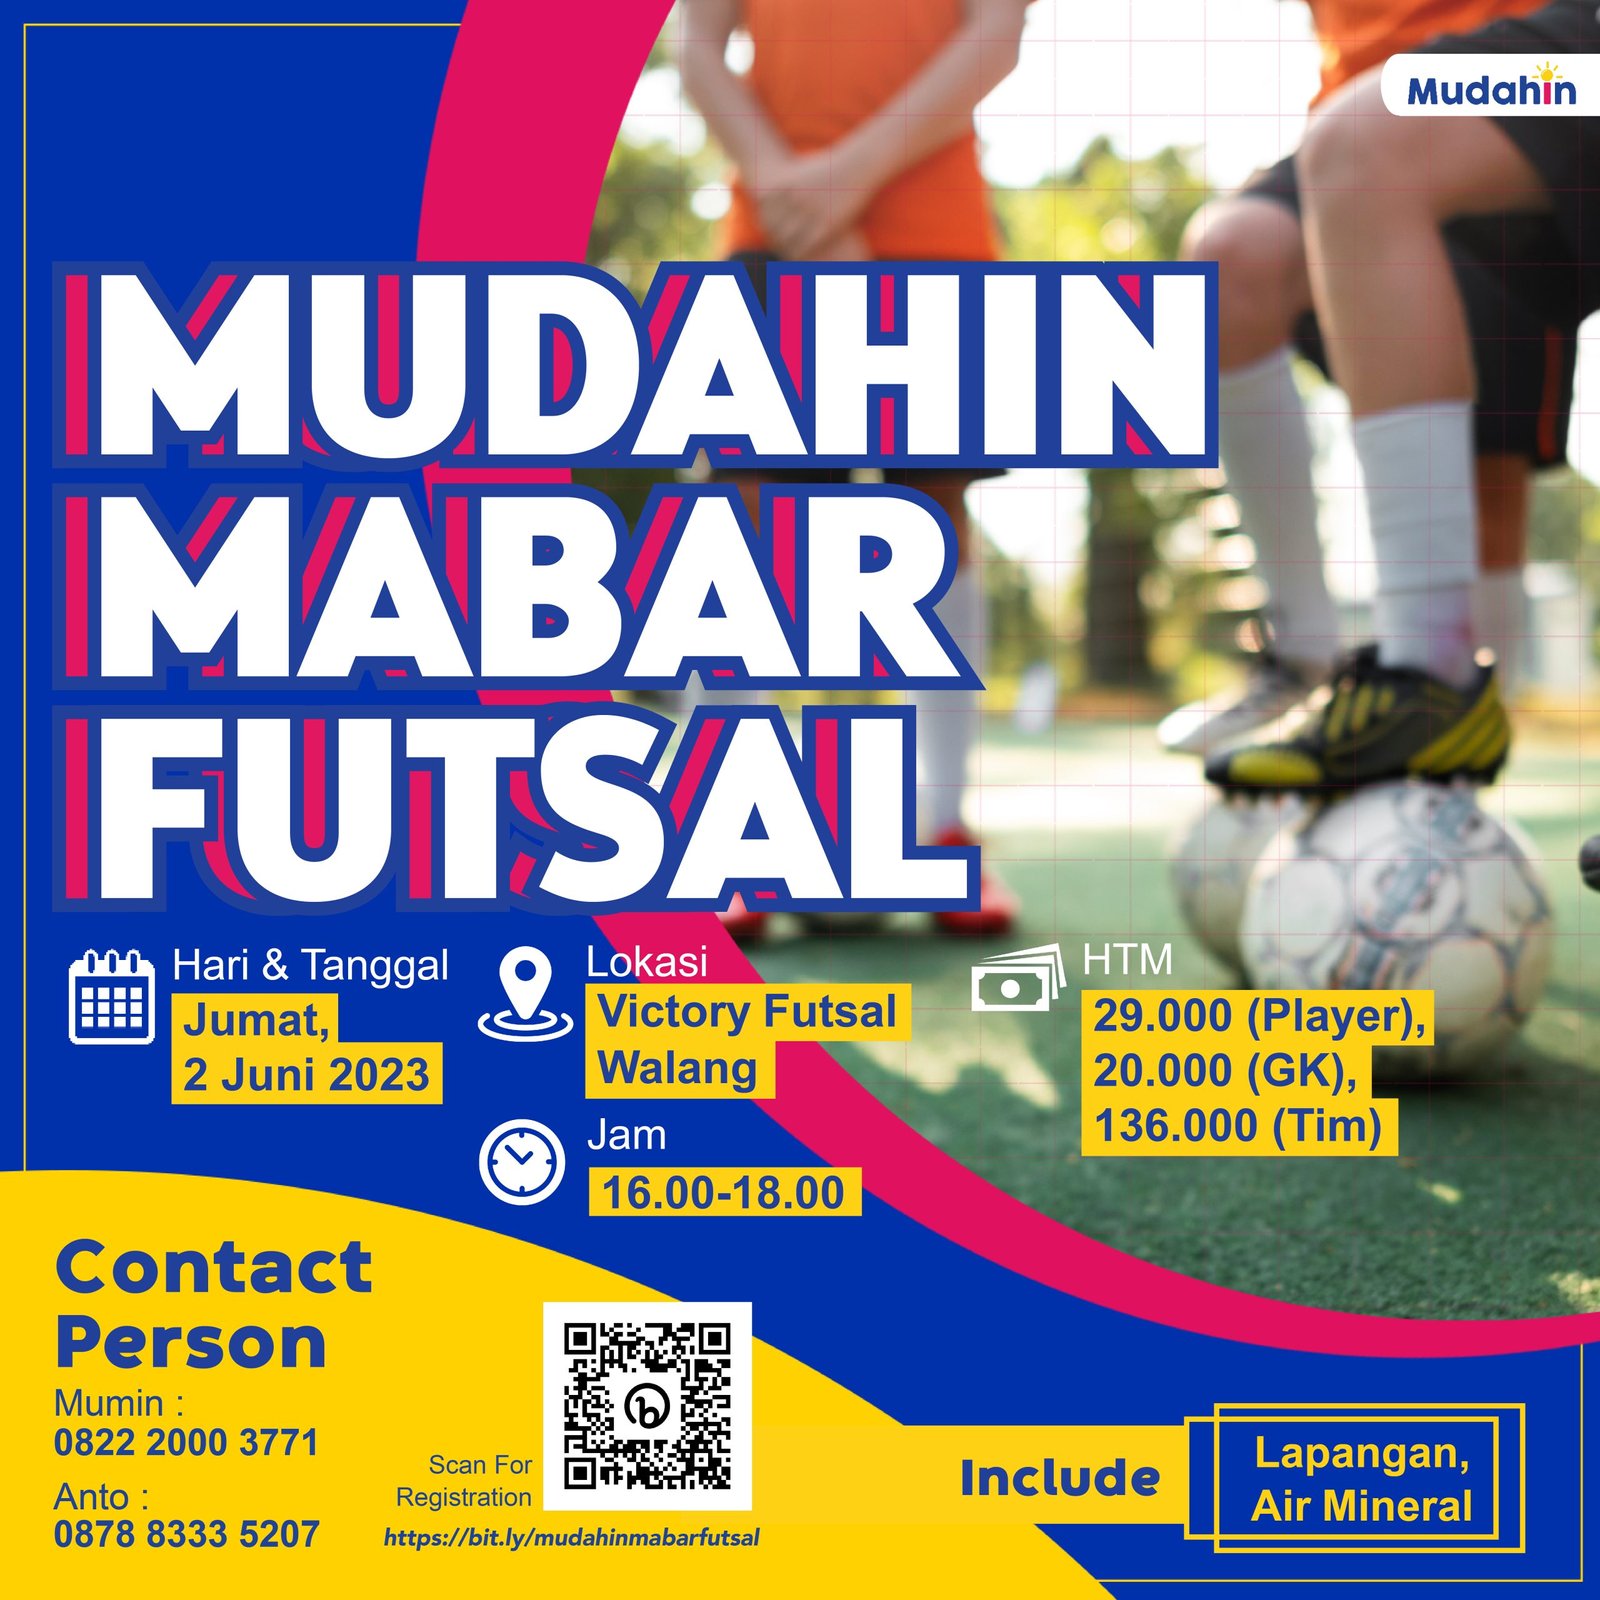 Mudahin Mabar Futsal, Jumat 2 Juni 2023